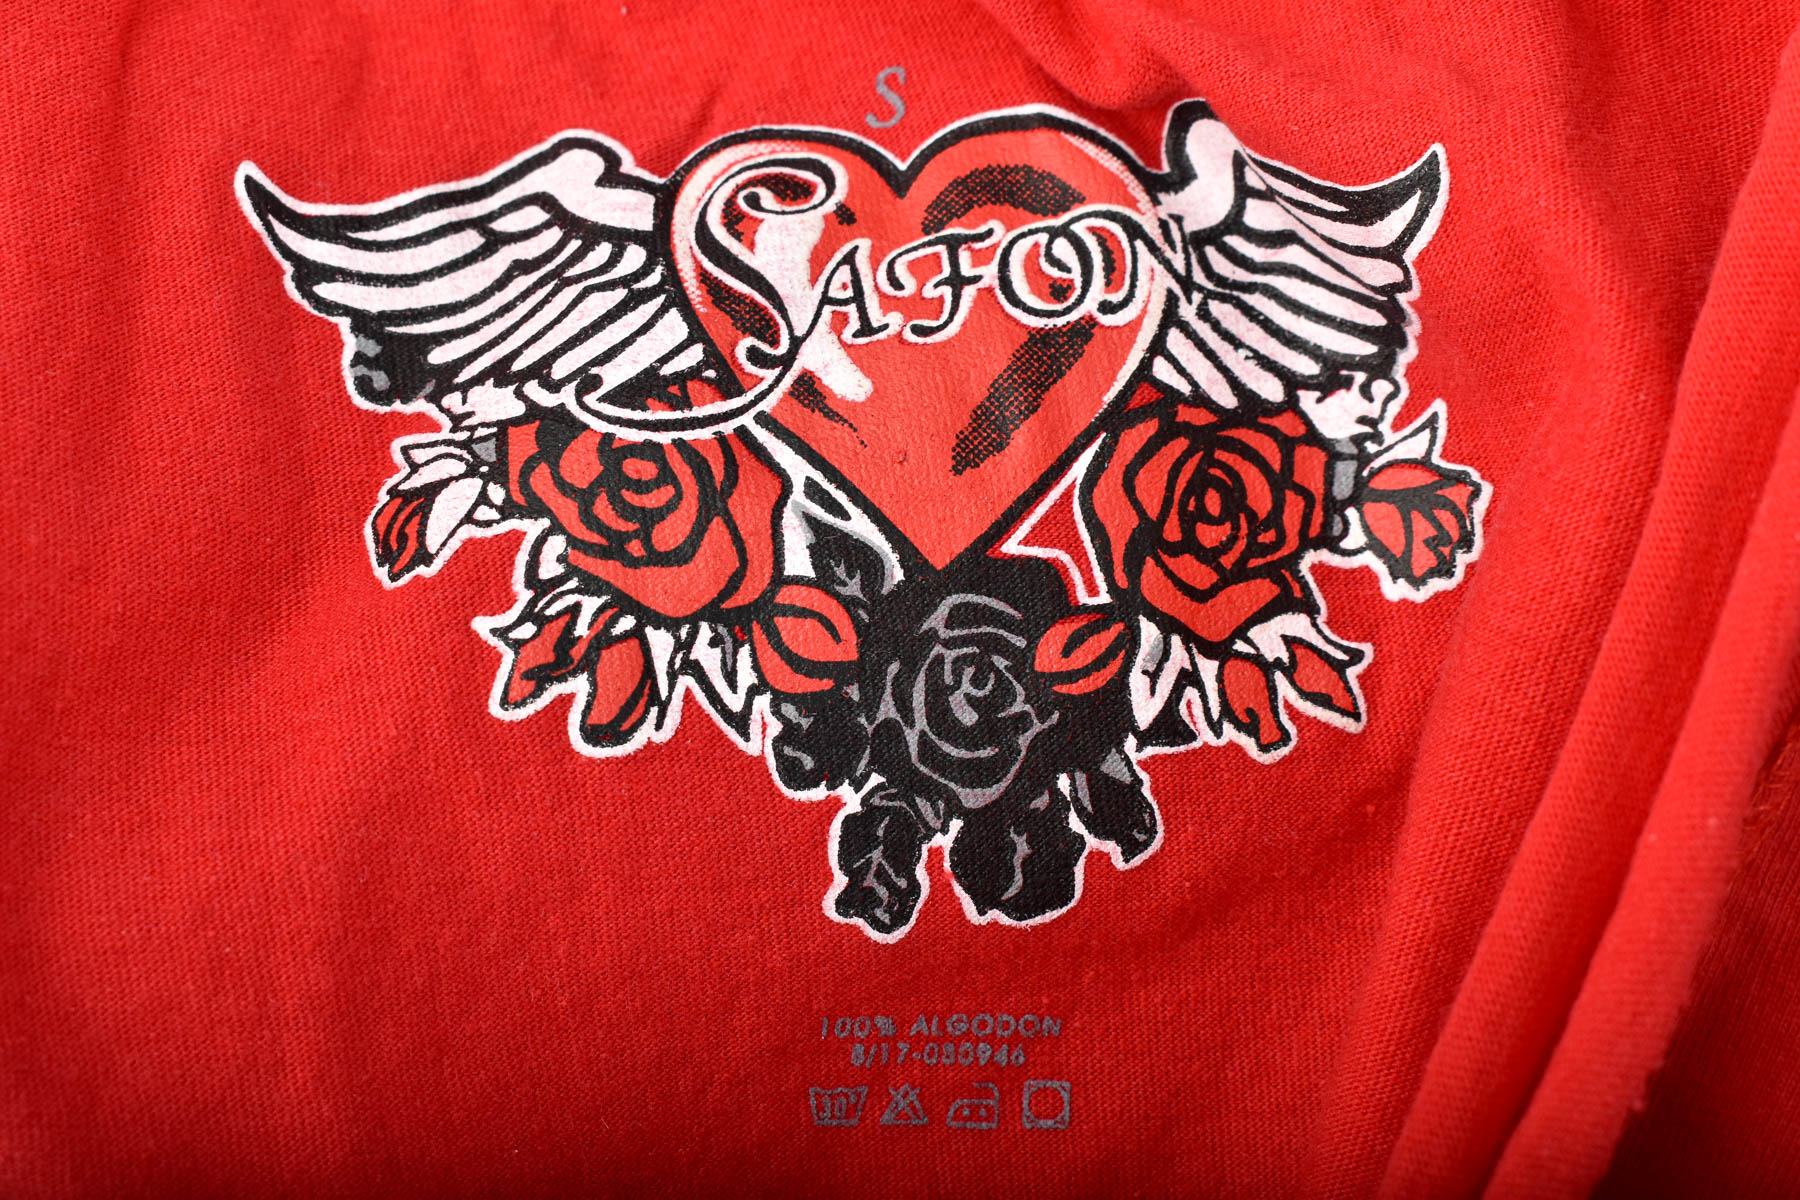 Koszulka damska - Safon - 2